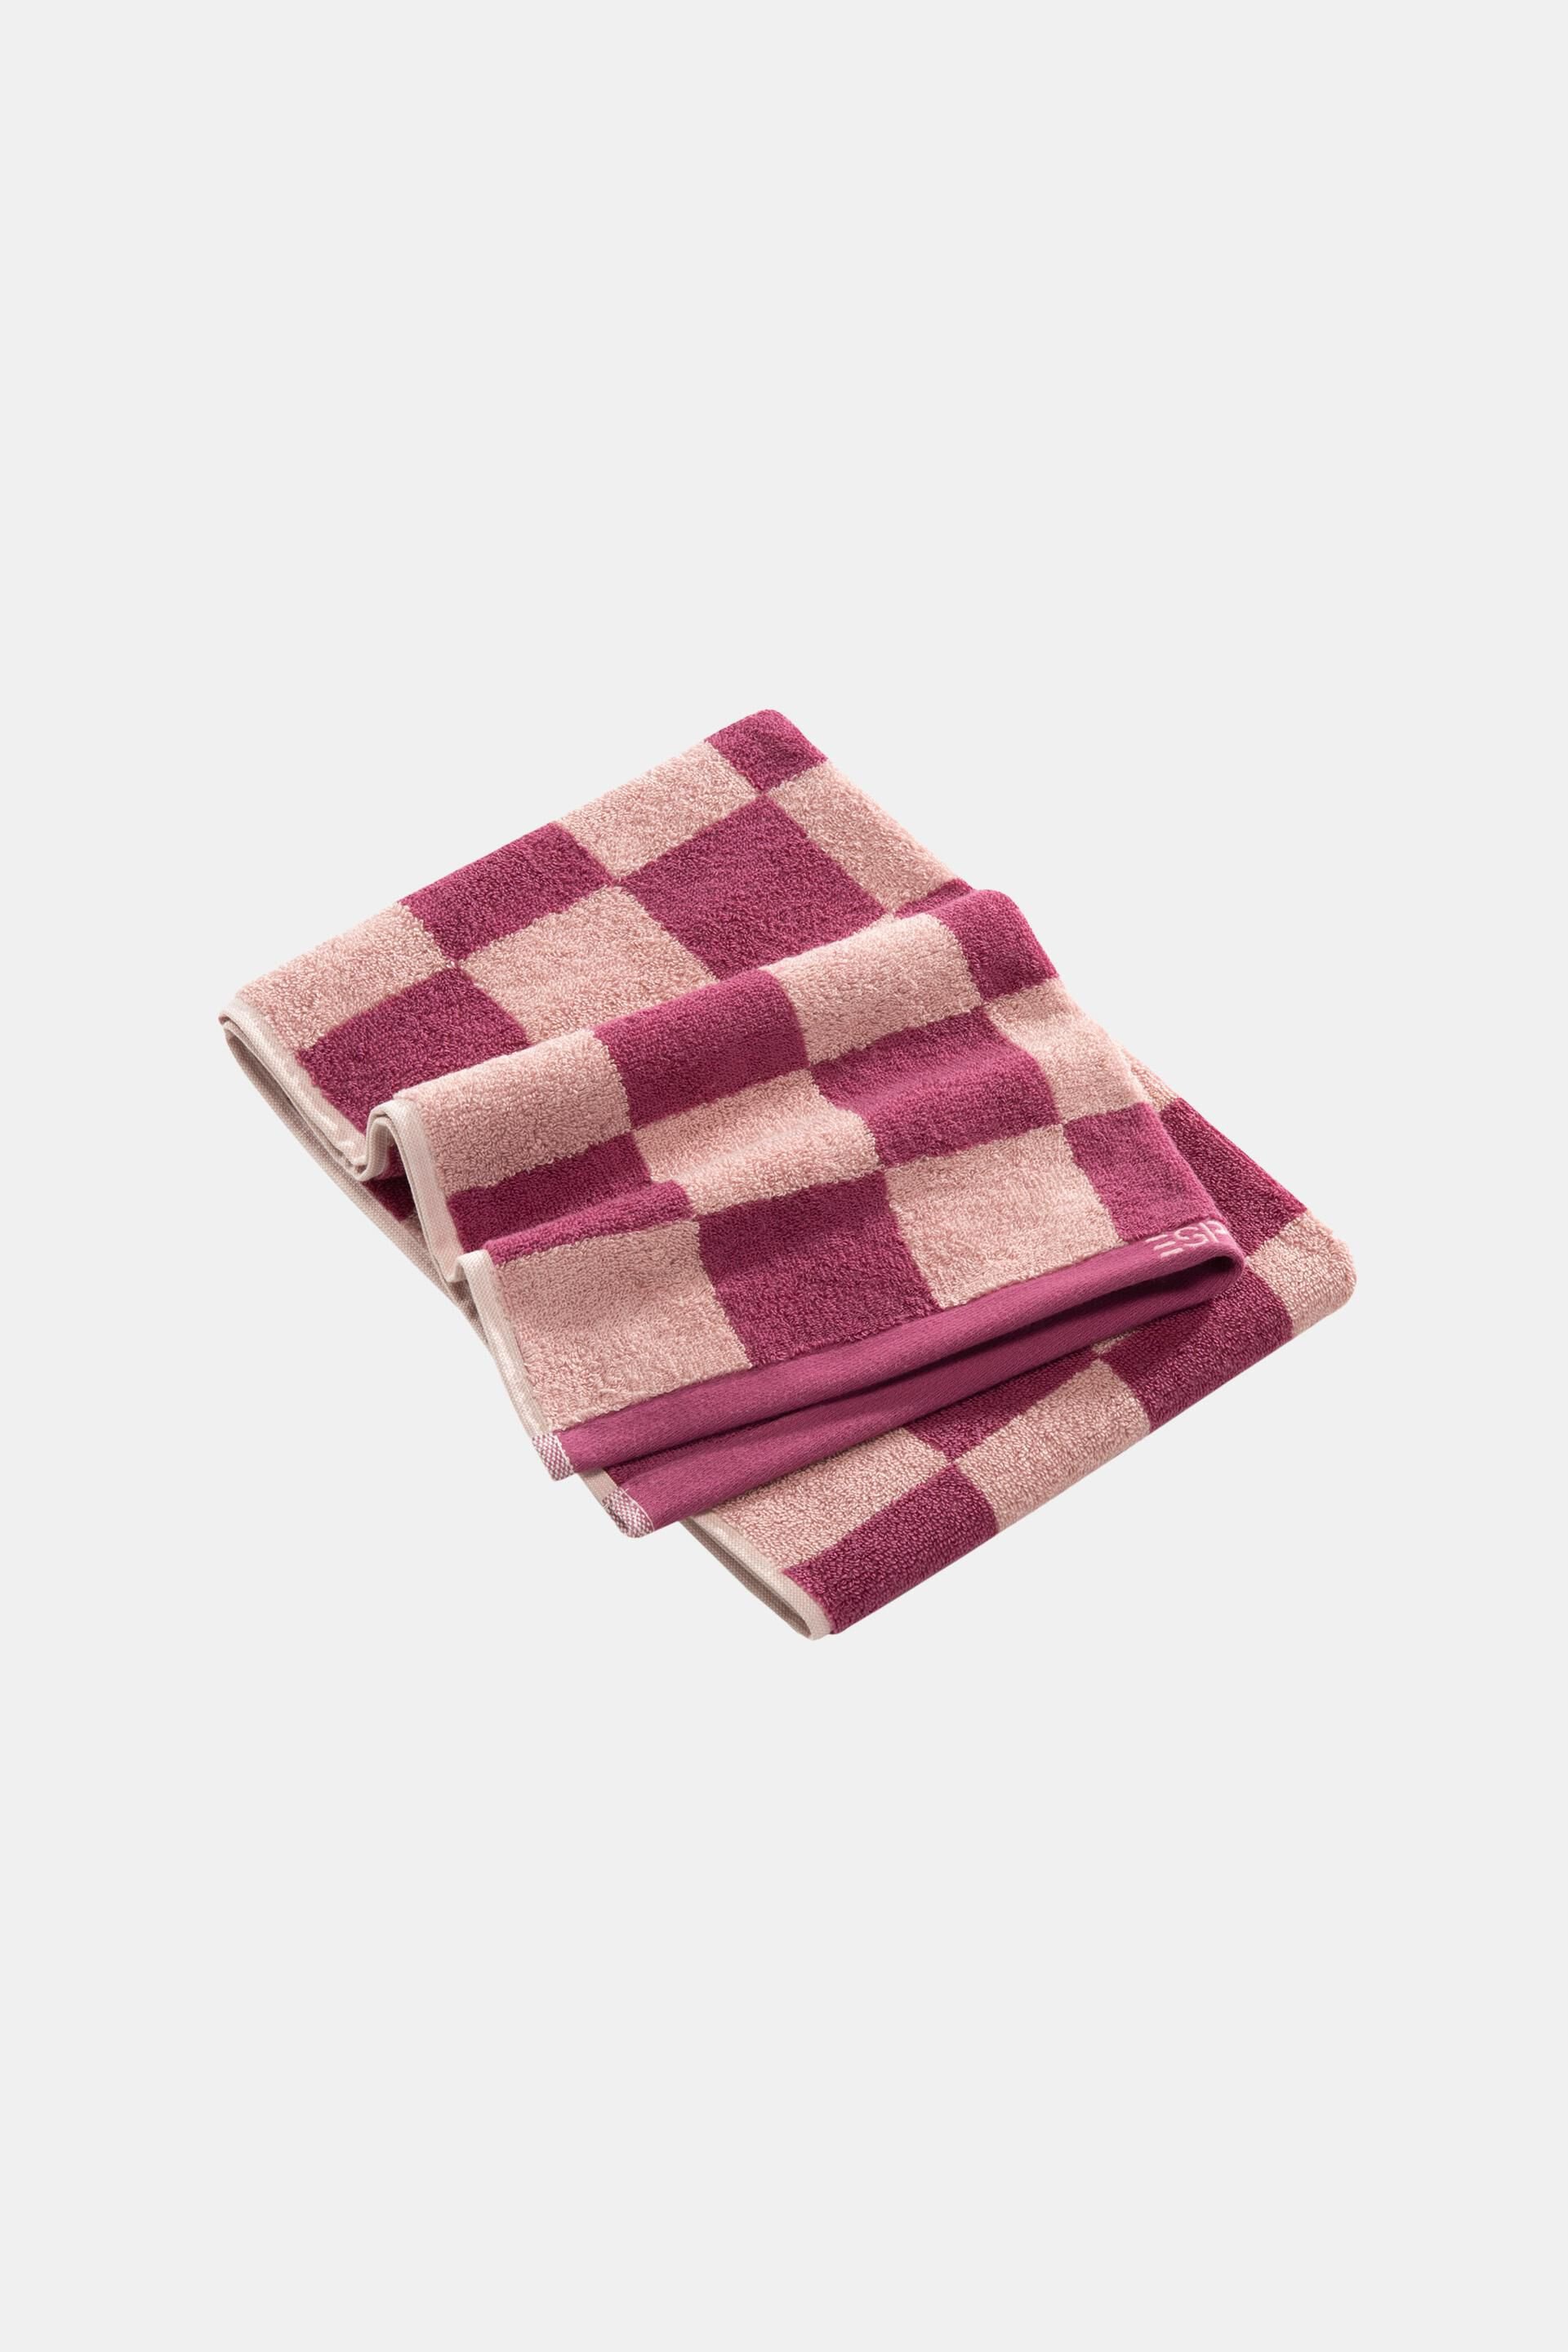 Esprit towel, Chequered 100% cotton pattern